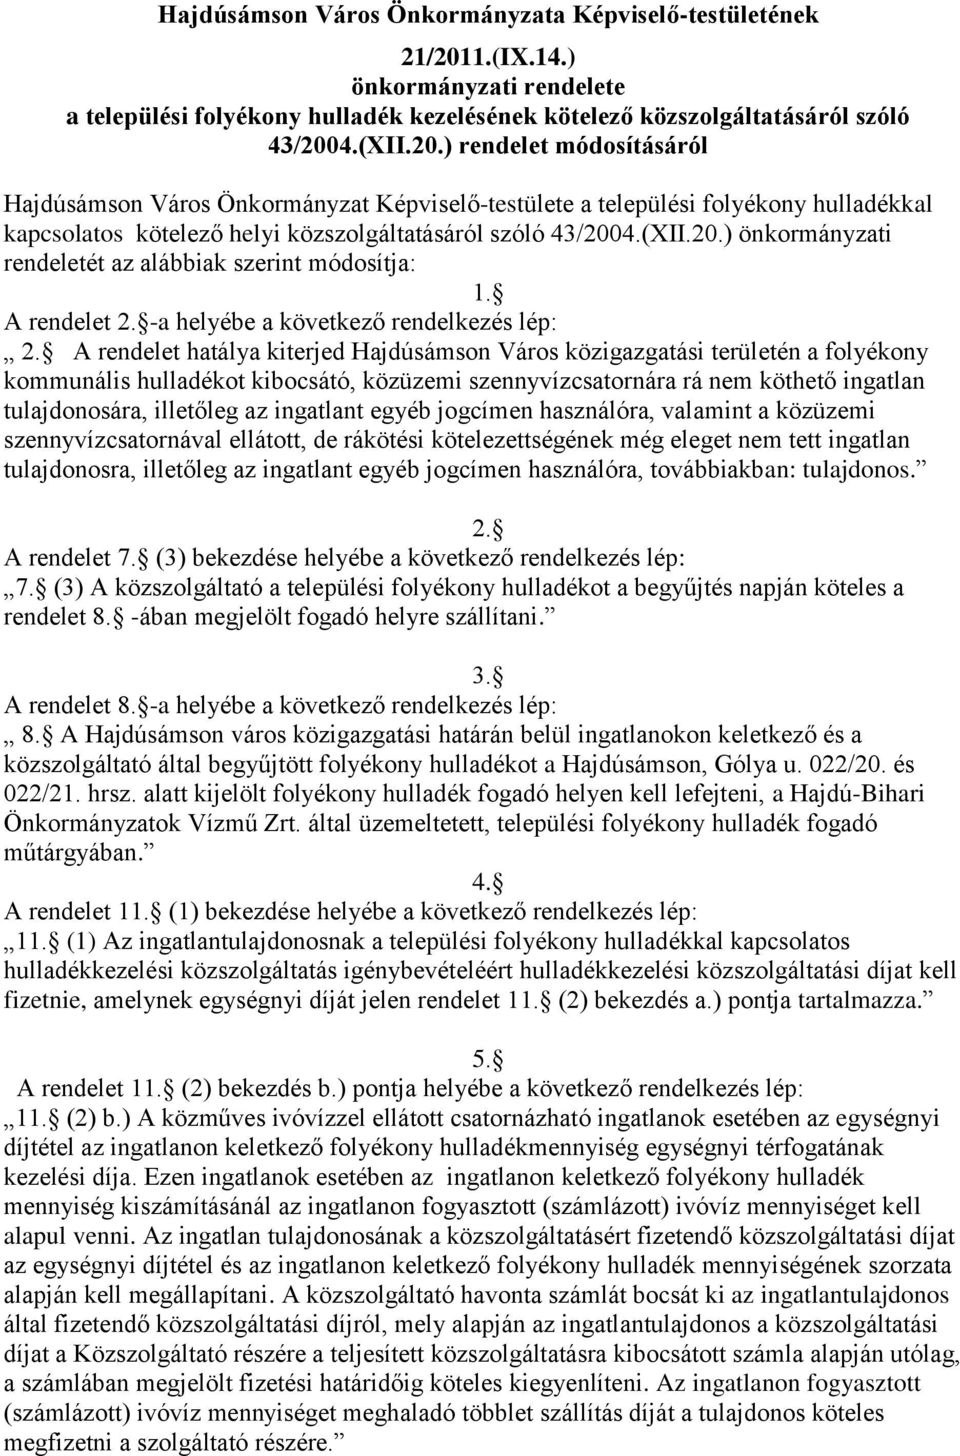 4.(XII.20.) rendelet módosításáról Hajdúsámson Város Önkormányzat Képviselő-testülete a települési folyékony hulladékkal kapcsolatos kötelező helyi közszolgáltatásáról szóló 43/2004.(XII.20.) önkormányzati rendeletét az alábbiak szerint módosítja: 1.